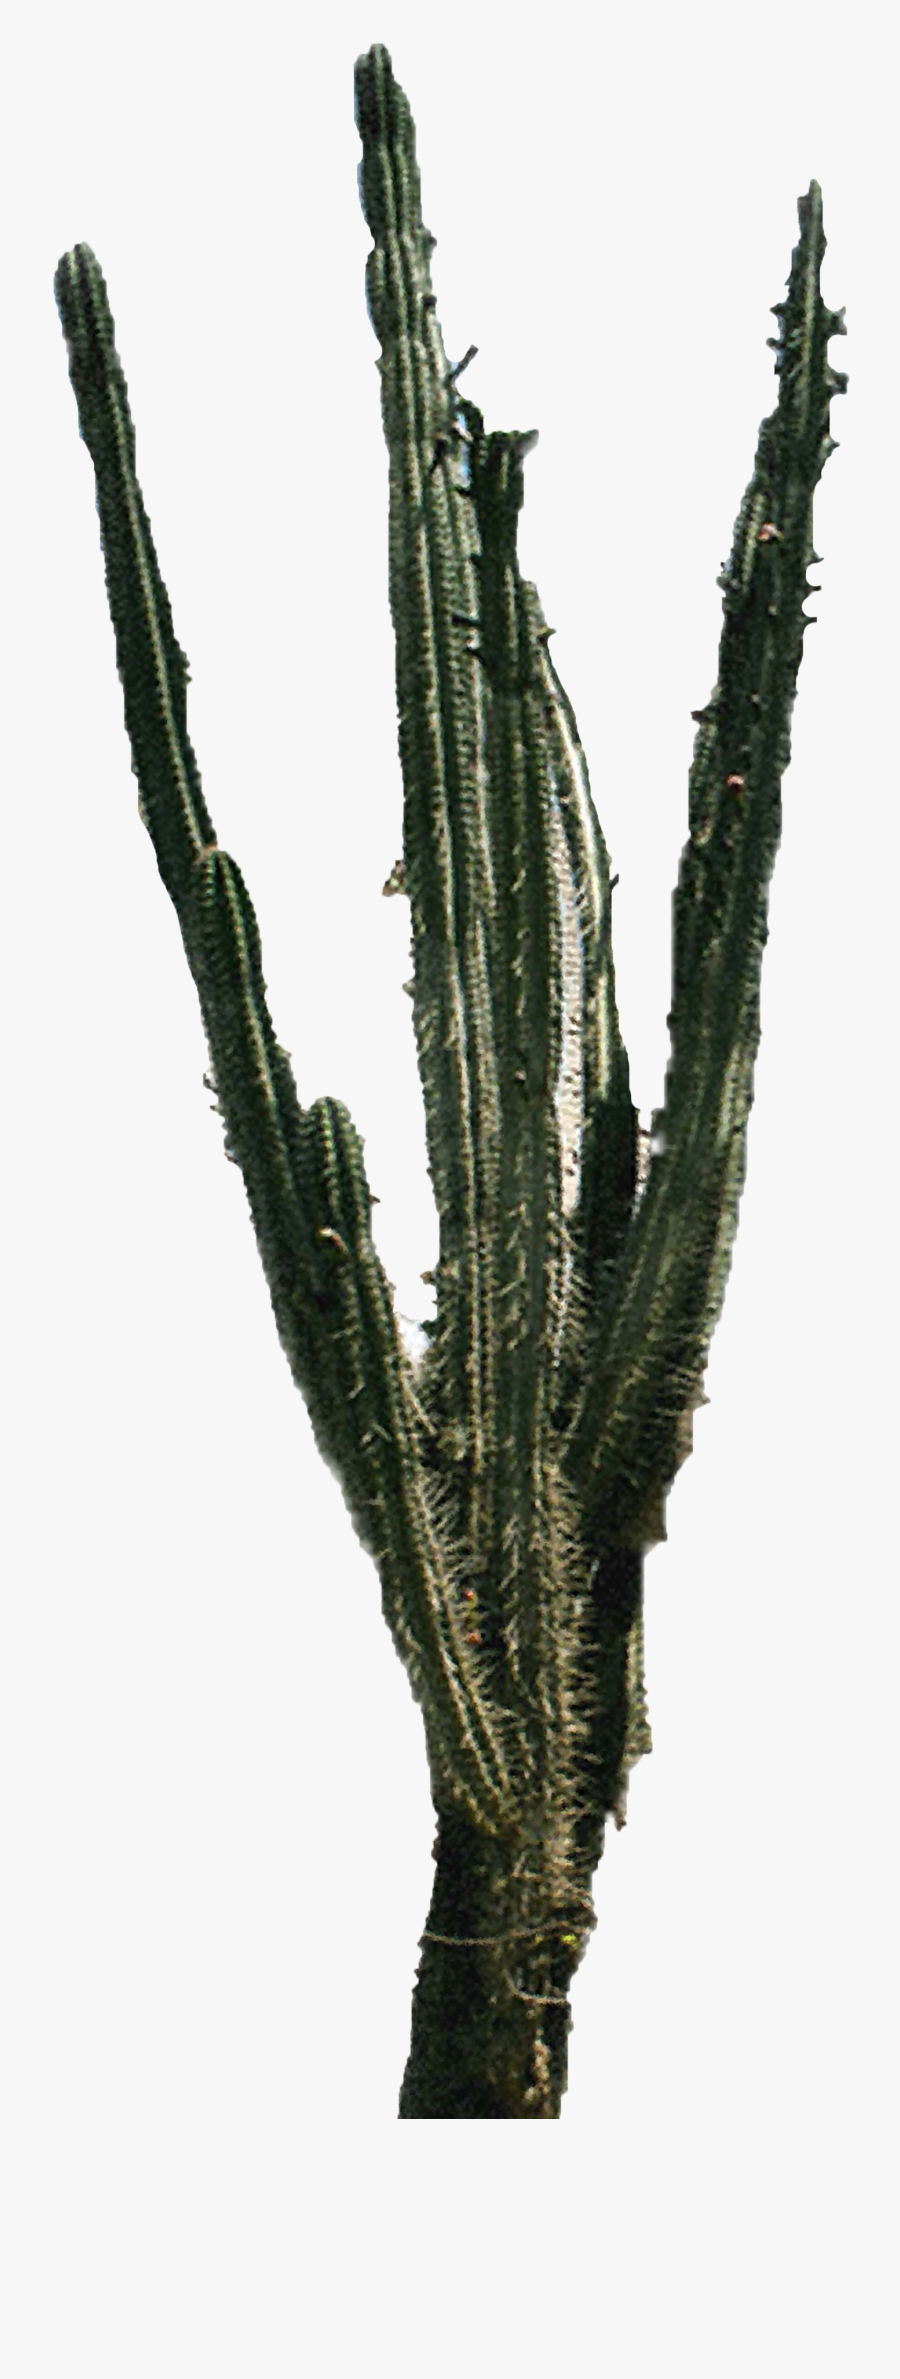 Cactus Png Download Best Cactus Png Clipartmagm - Cactus Plant Image Png, Transparent Clipart